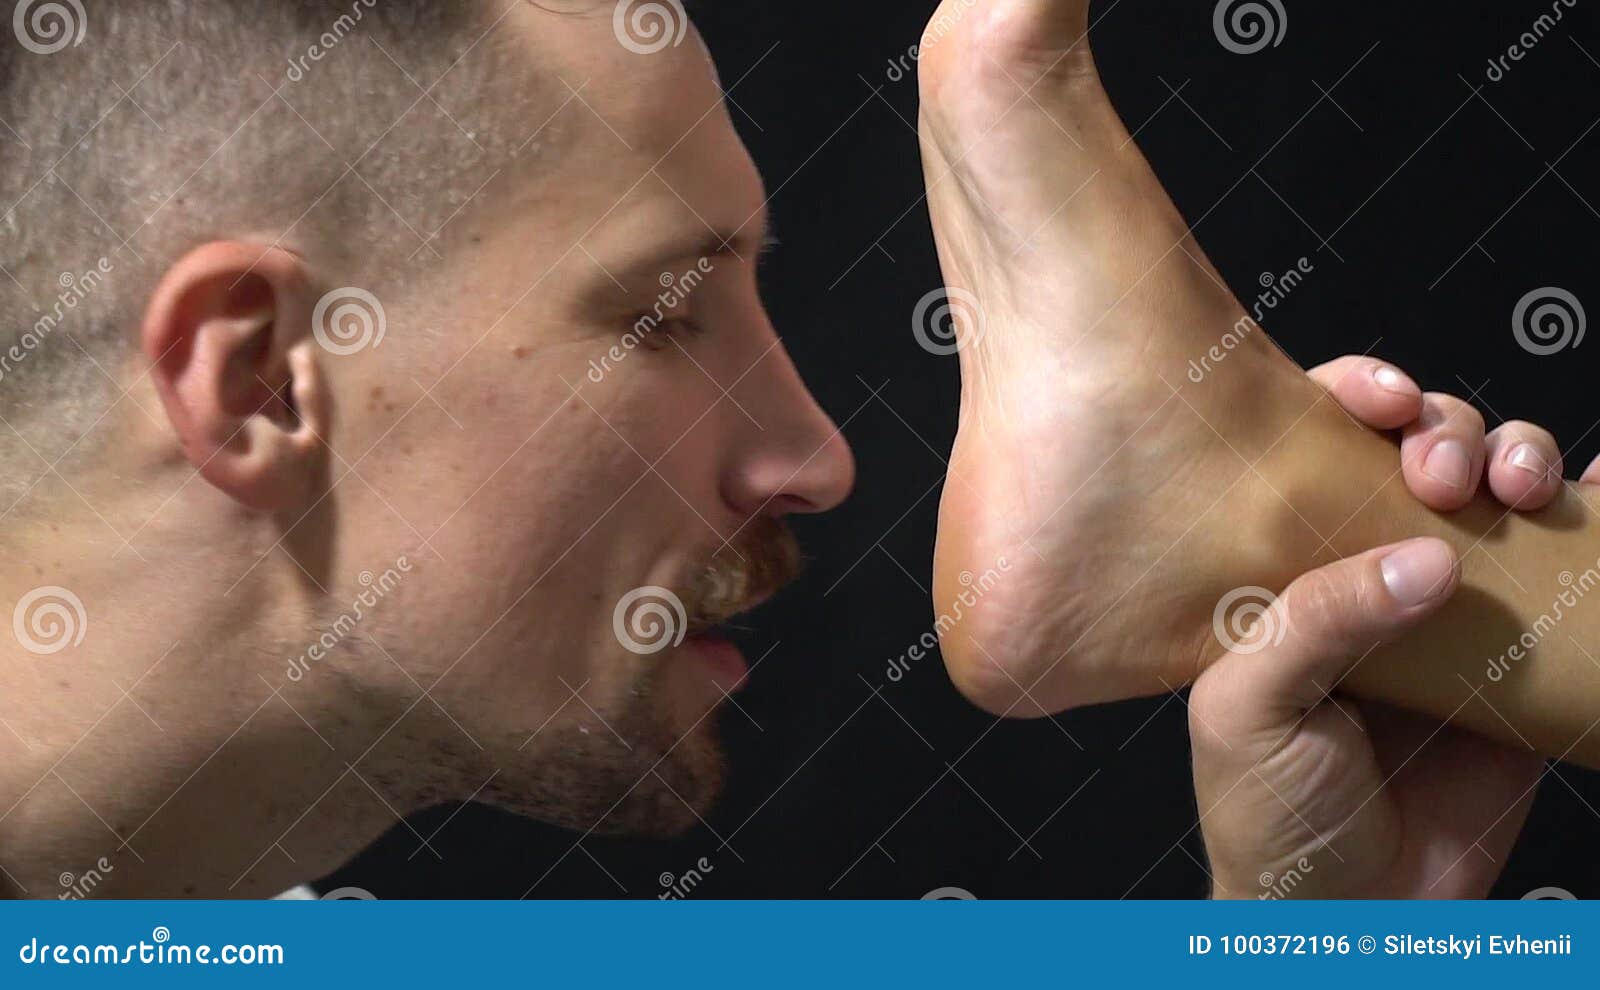 Men feet licked